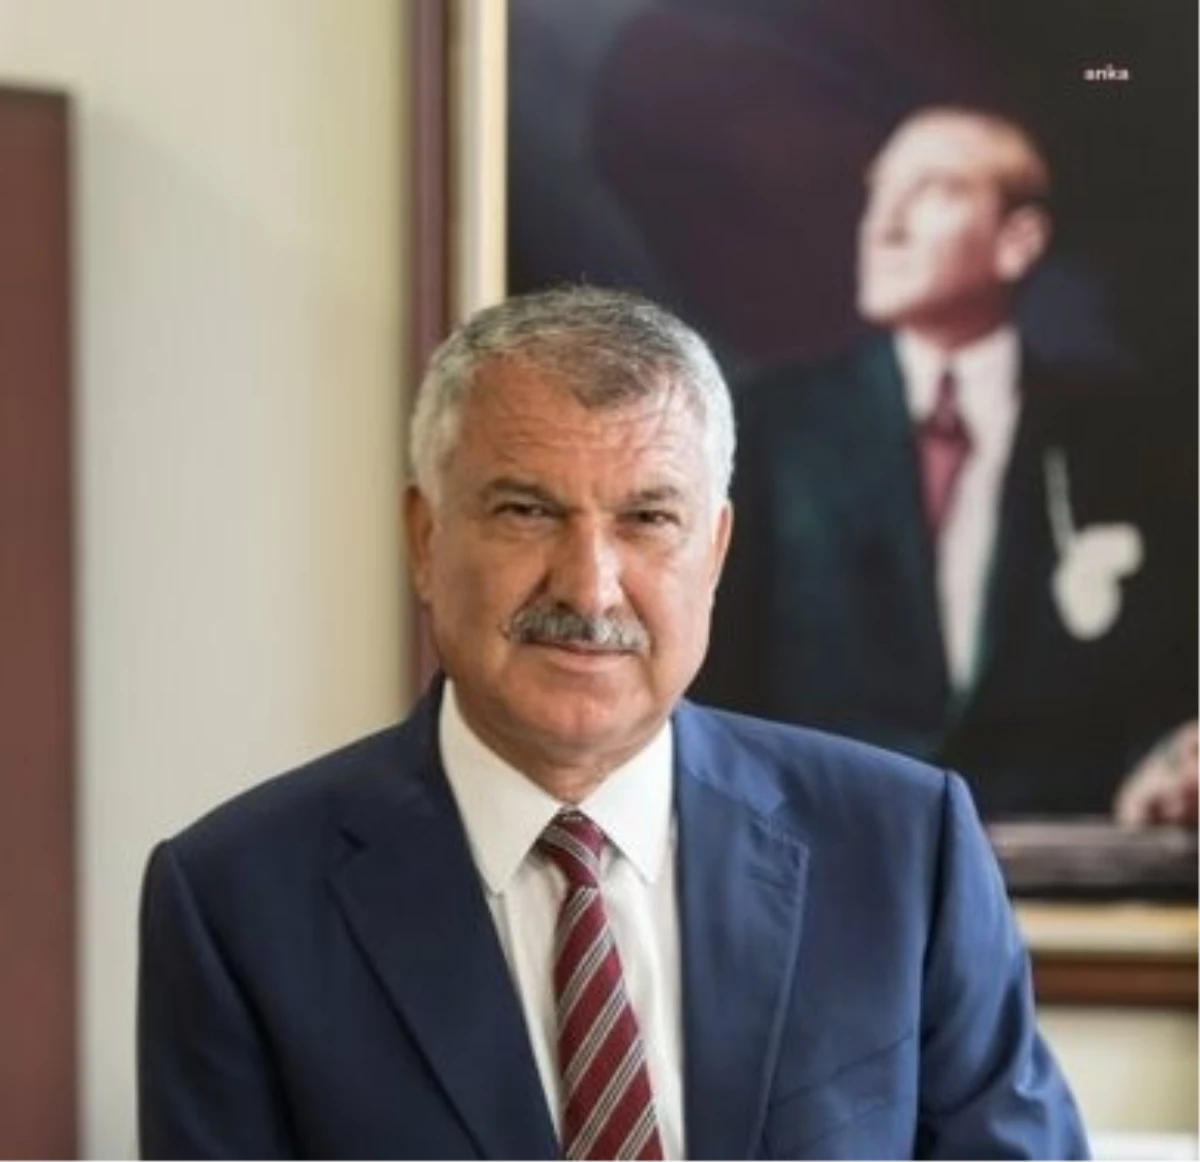 Adana Büyükşehir Belediye Başkanı Zeydan Karalar, silahlı saldırıya uğrayan mesai arkadaşının tedavisinin devam ettiğini açıkladı